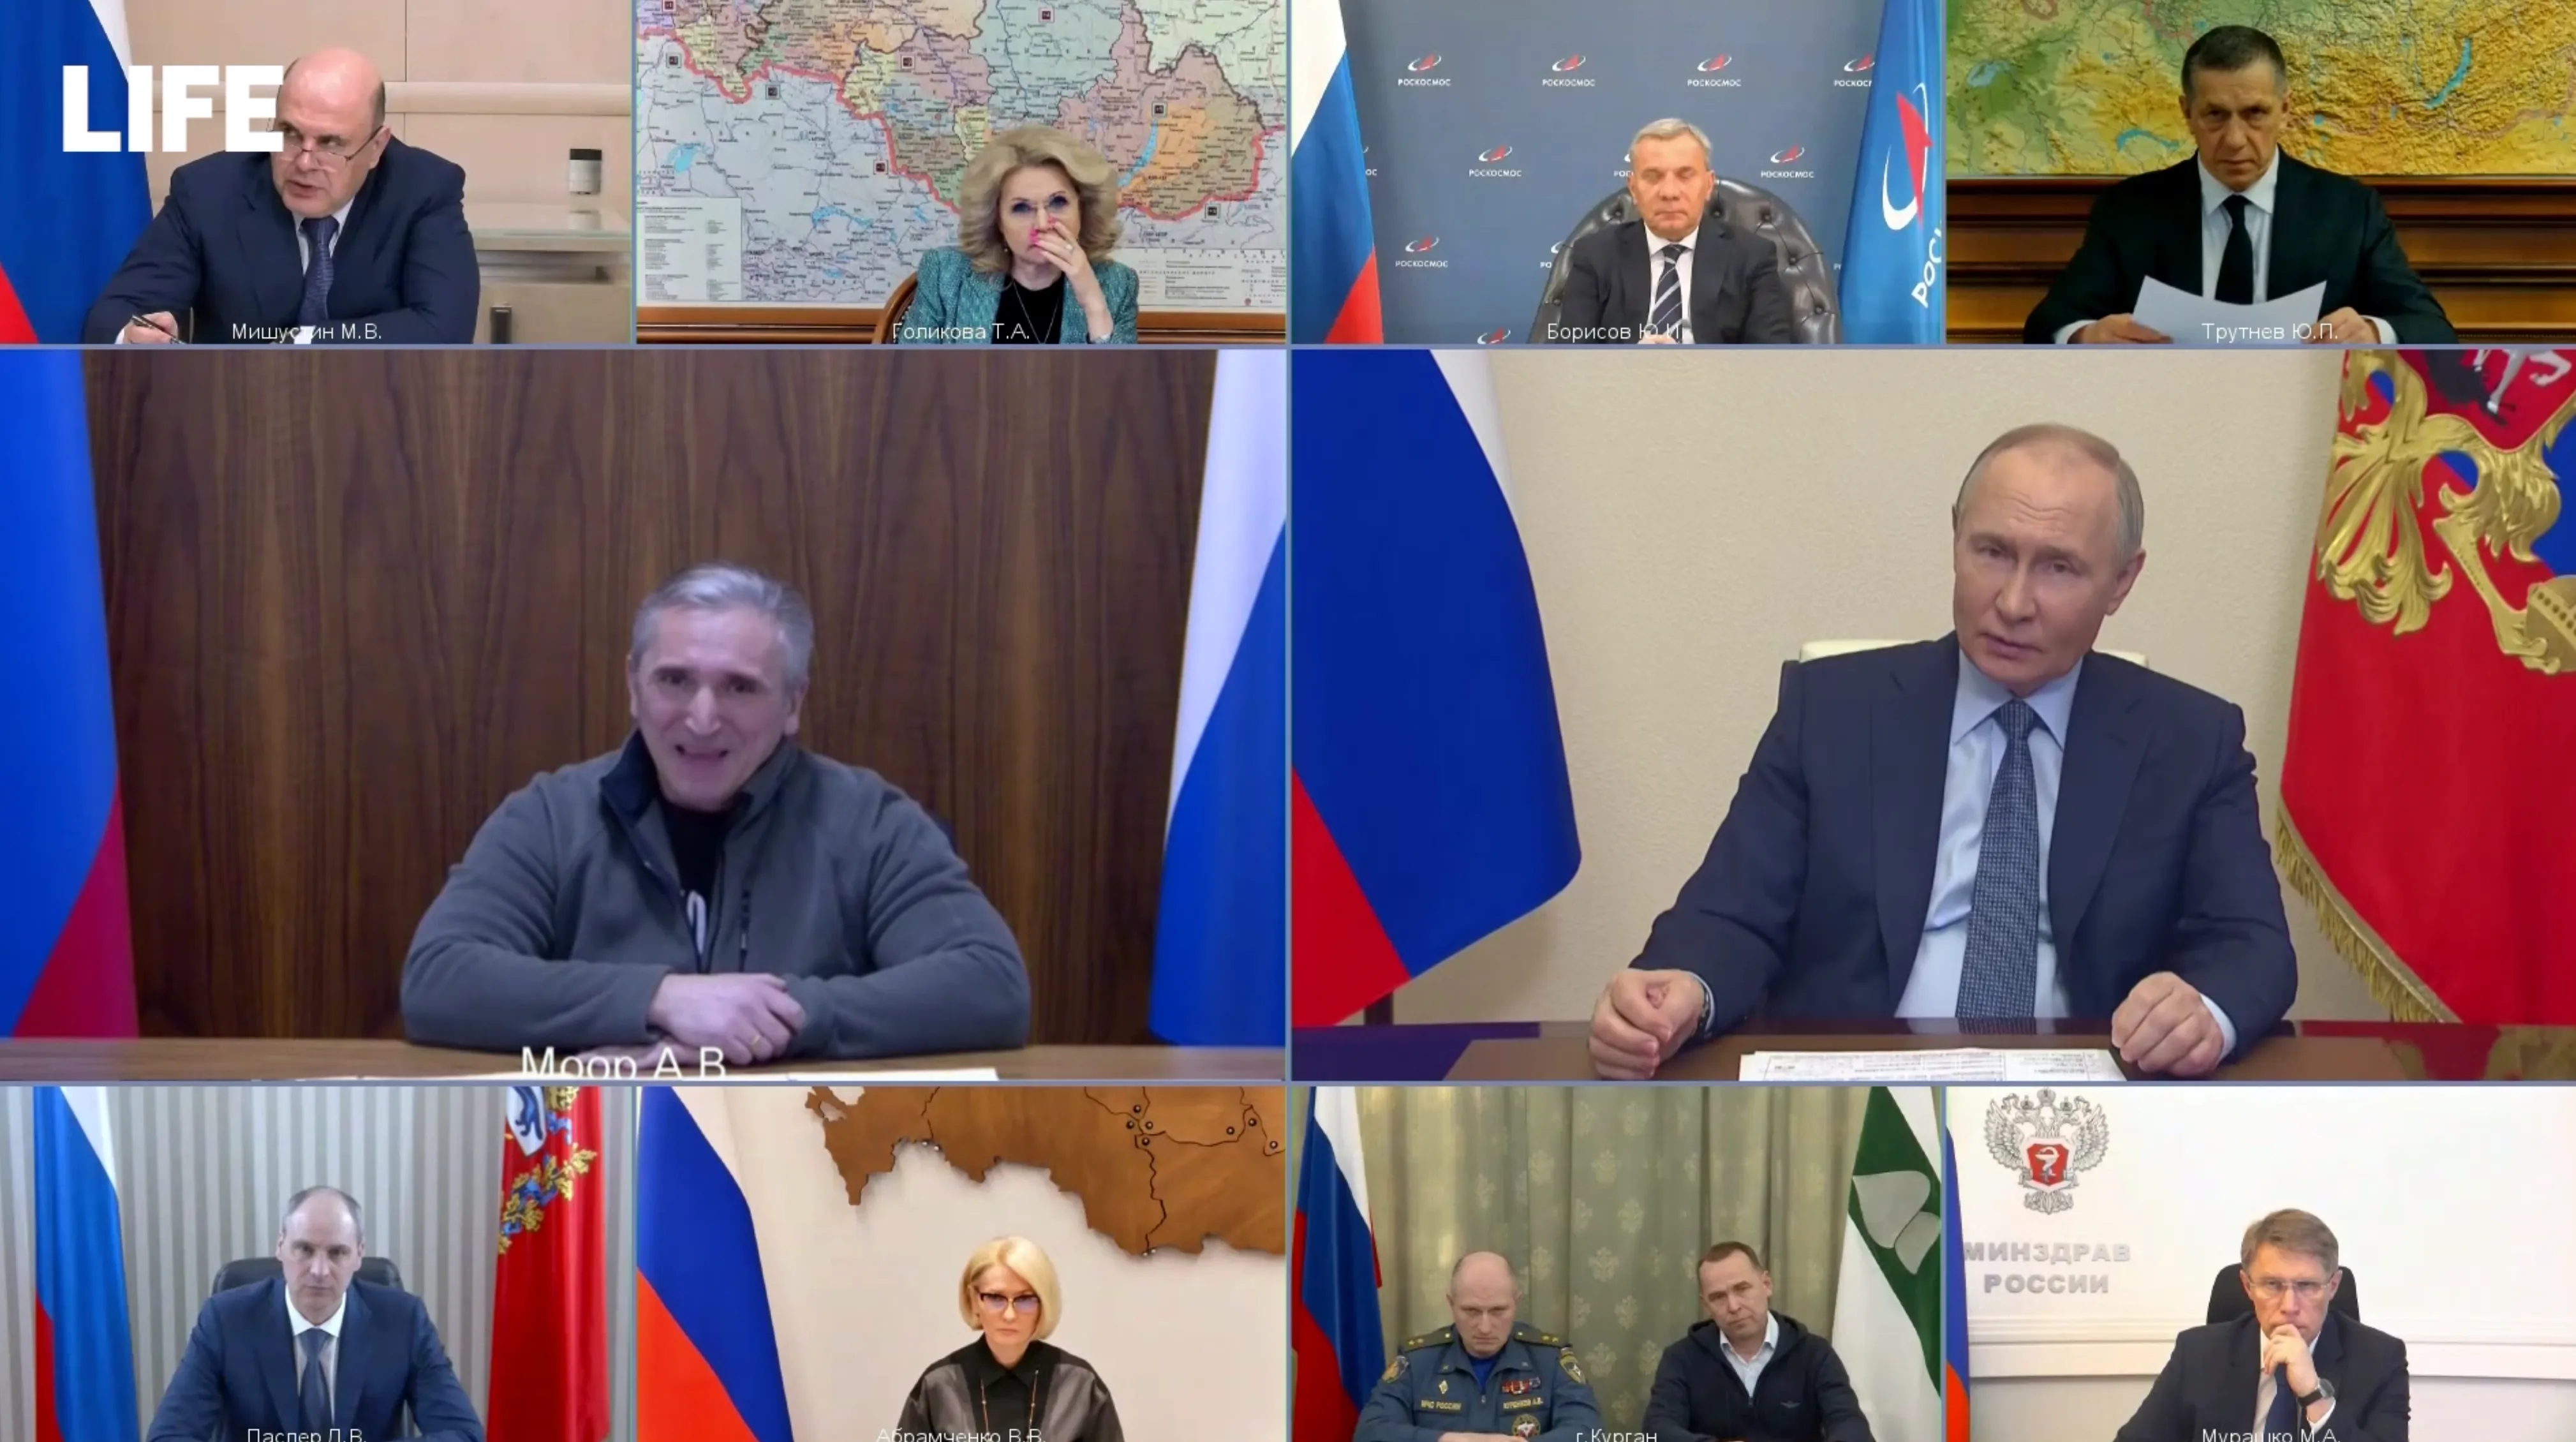 Не надо так о людях: Путин сделал замечание губернатору за слова об упёртых тюменцах